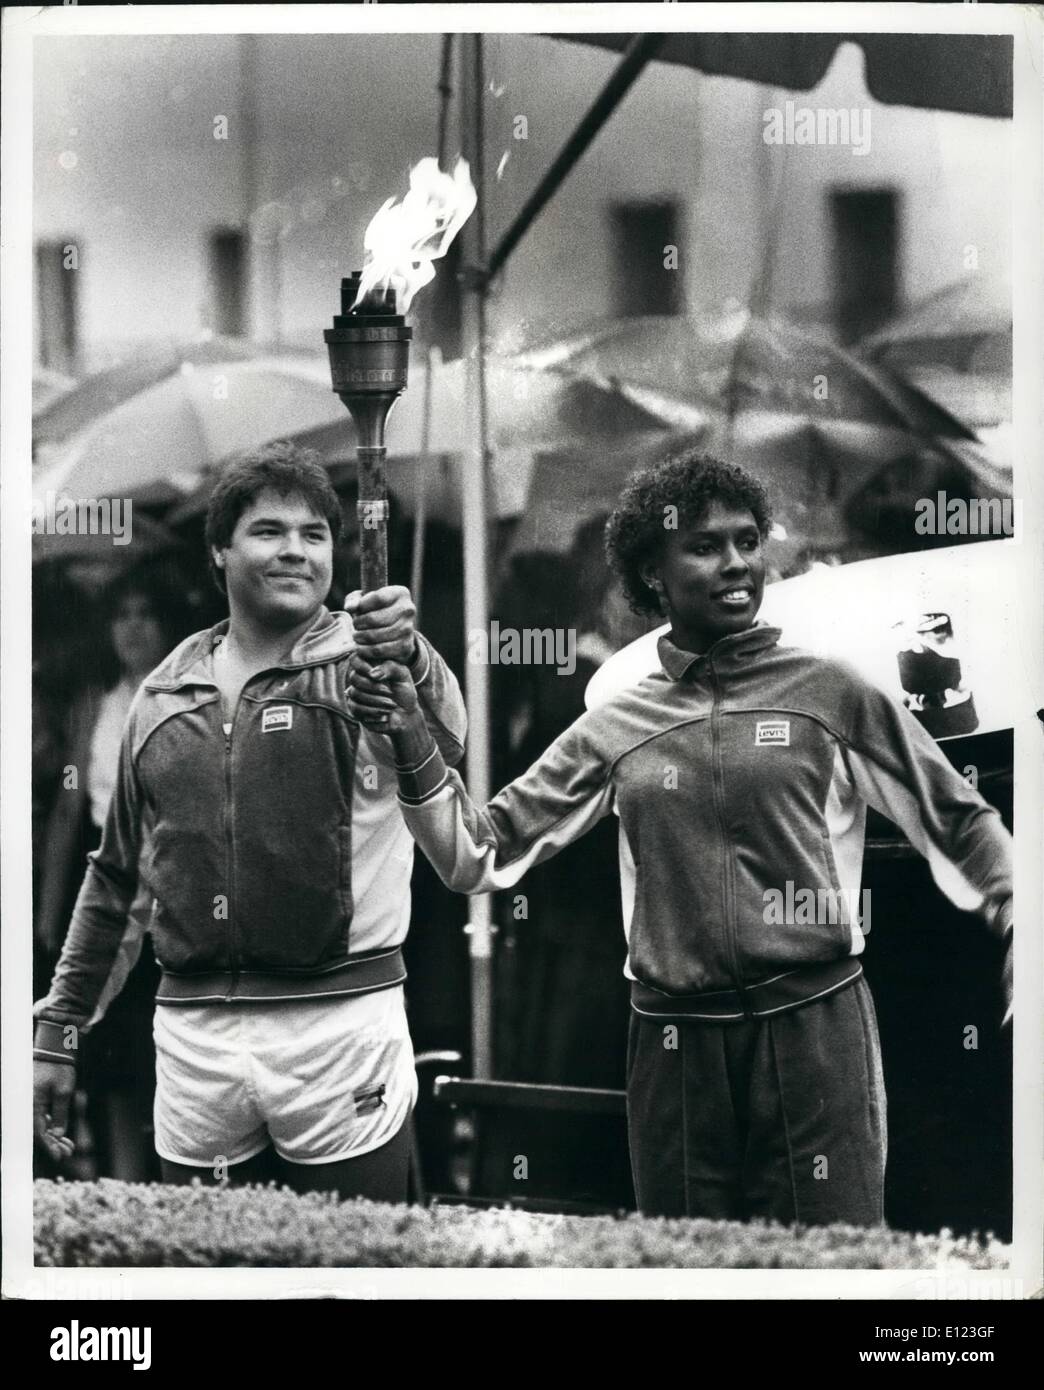 Mai 05, 1984 - United Nations New York les méandres de 82 jours de voyage du relais de la flamme olympique de 1984 a commencé dans la ville de New York, en face de l'immeuble des Nations Unies. Le même jour que l'Union soviétique a annoncé qu'ils n'auraient pas envoyer leurs athlètes aux Jeux à Los Angeles. Gina Hemphill et Bill Thorpe Jr., petits-enfants de grands Olympique Jesse est Woner et Jim Thorpe, allumé le flambeau et a couru le premier kilomètre. O.P.S. Bill Thorpe Jr. sur la gauche et Gina Hemphill sur la droite tenir le flambeau en altitude dans la pluie après la cérémonie d'allumage. Banque D'Images